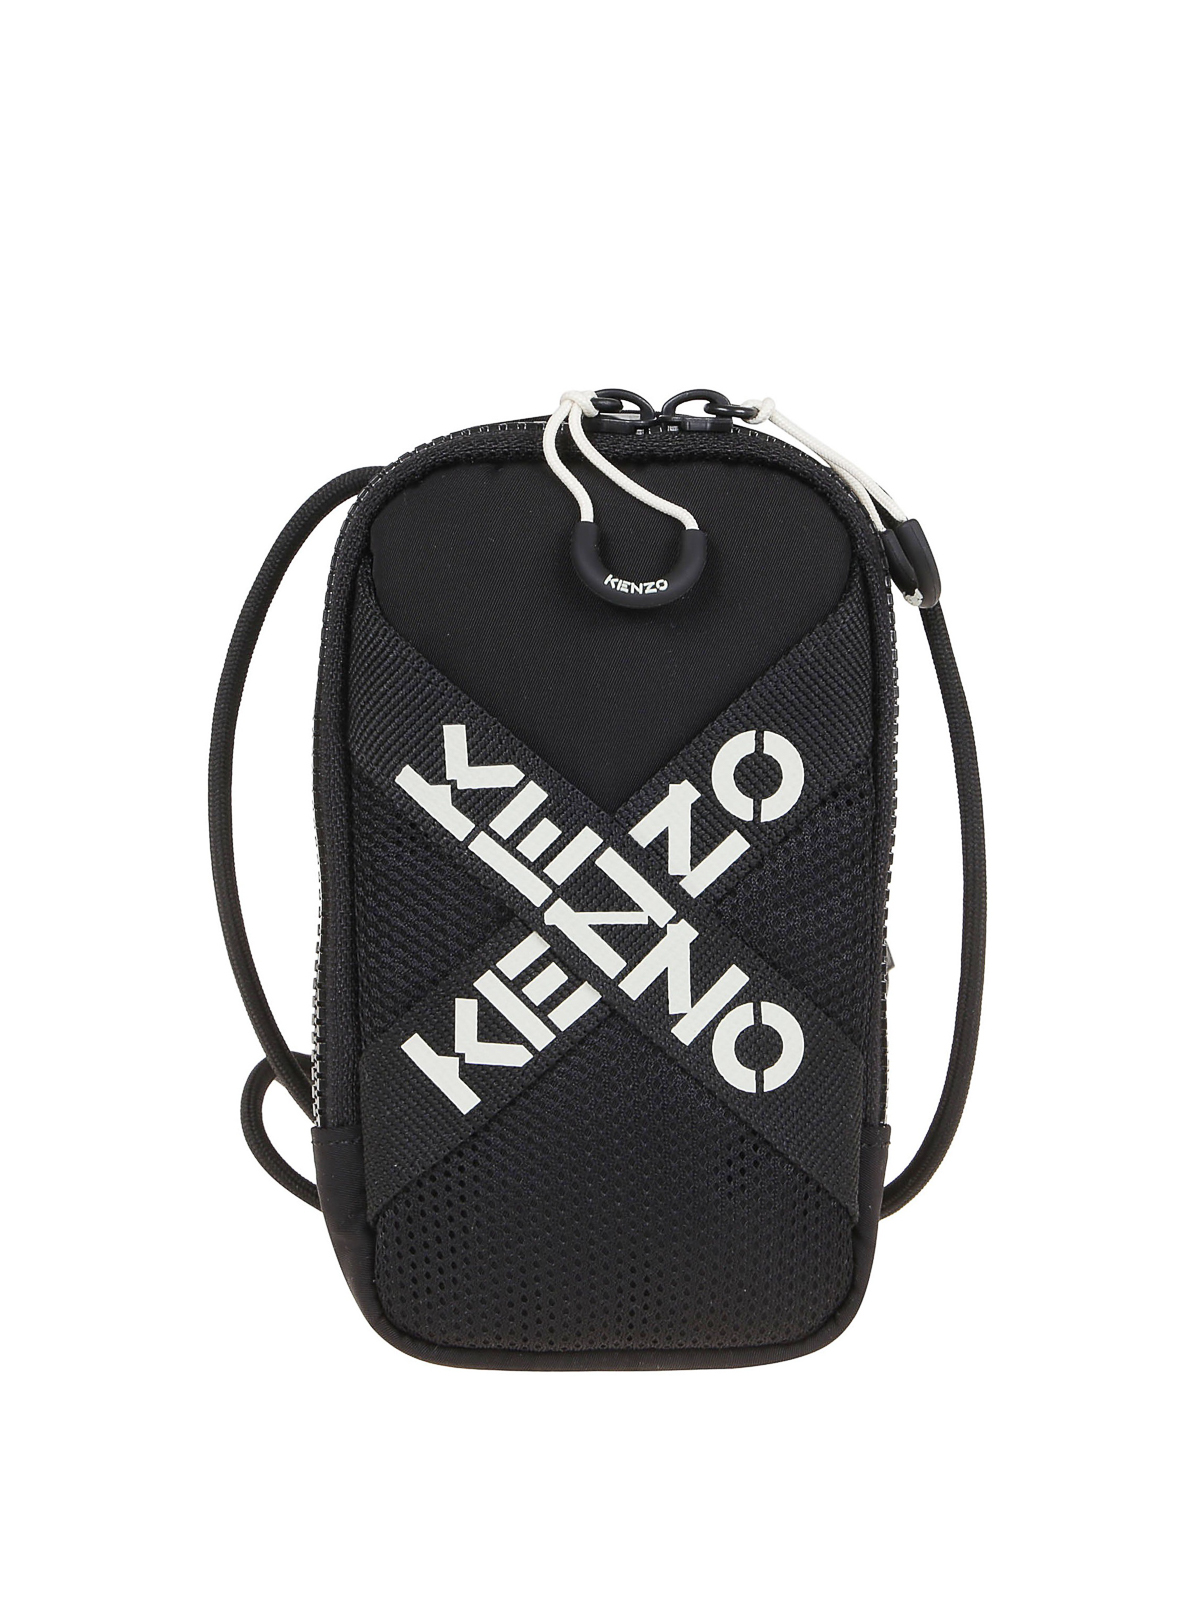 Kenzo Phone Holder Cross Logo In Black,white